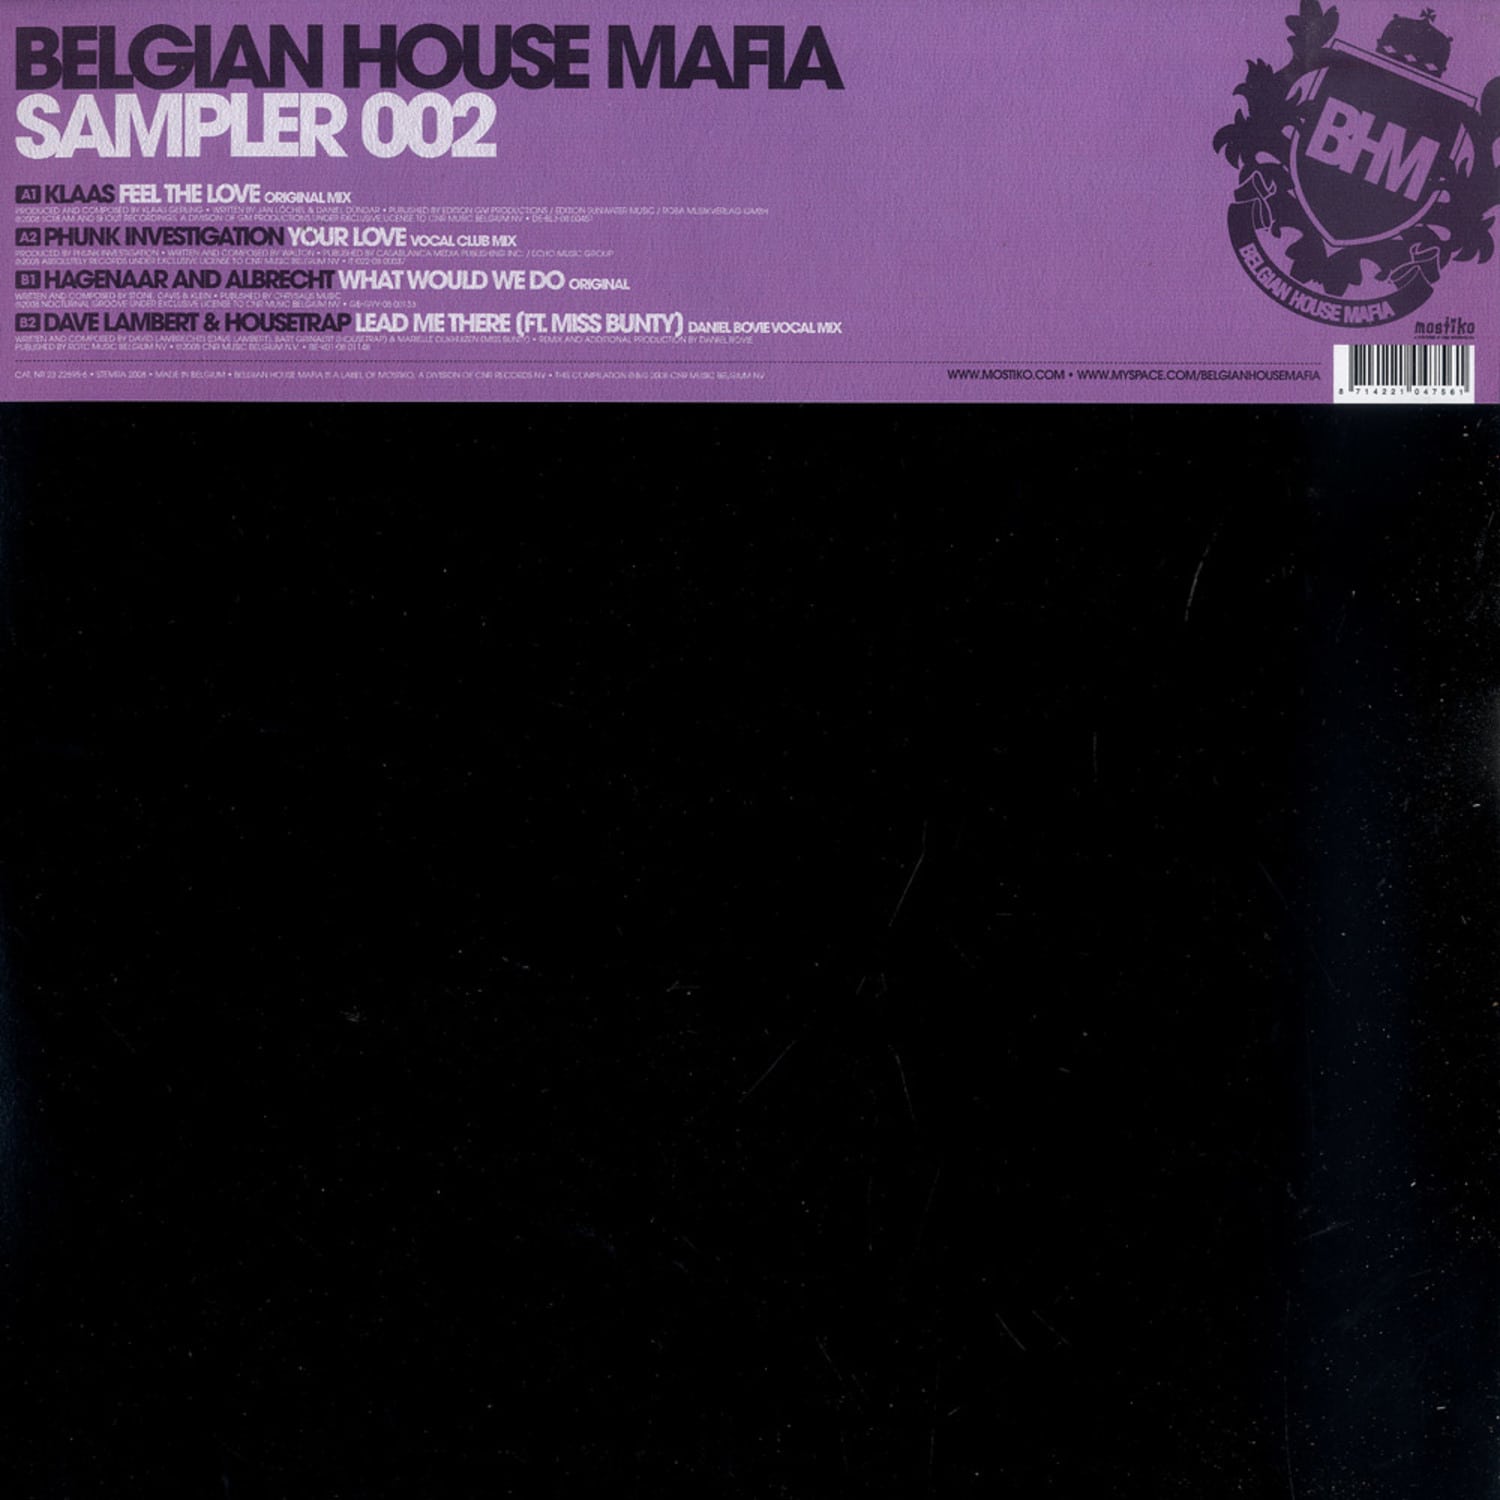 Belgian House Mafia - SAMPLER 002